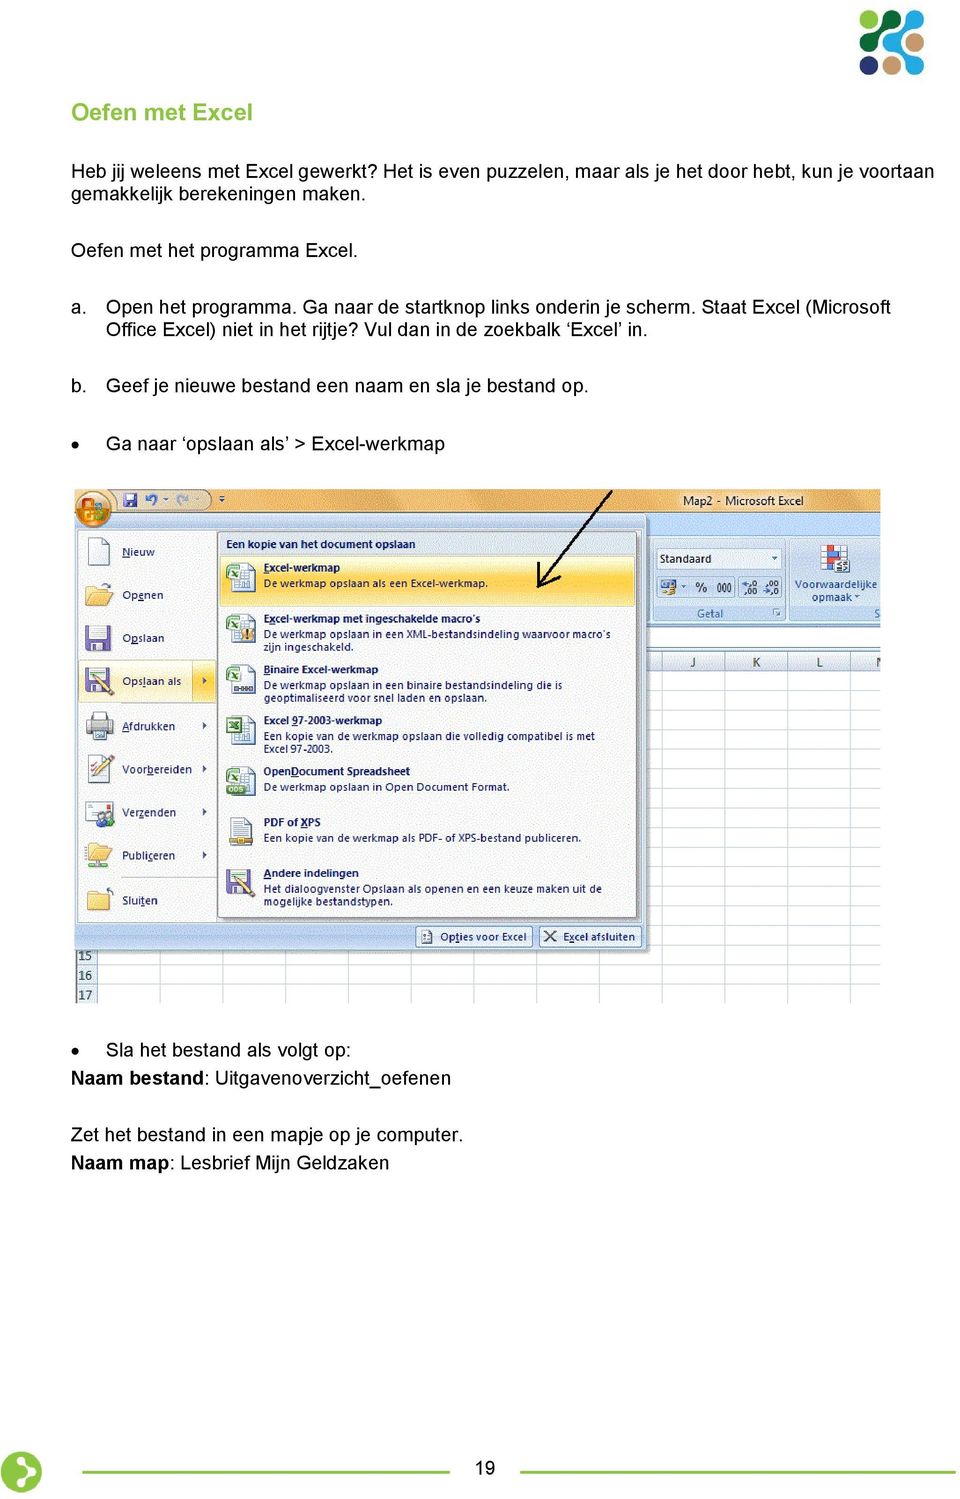 Ga naar de startknop links onderin je scherm. Staat Excel (Microsoft Office Excel) niet in het rijtje? Vul dan in de zoekbalk Excel in. b.